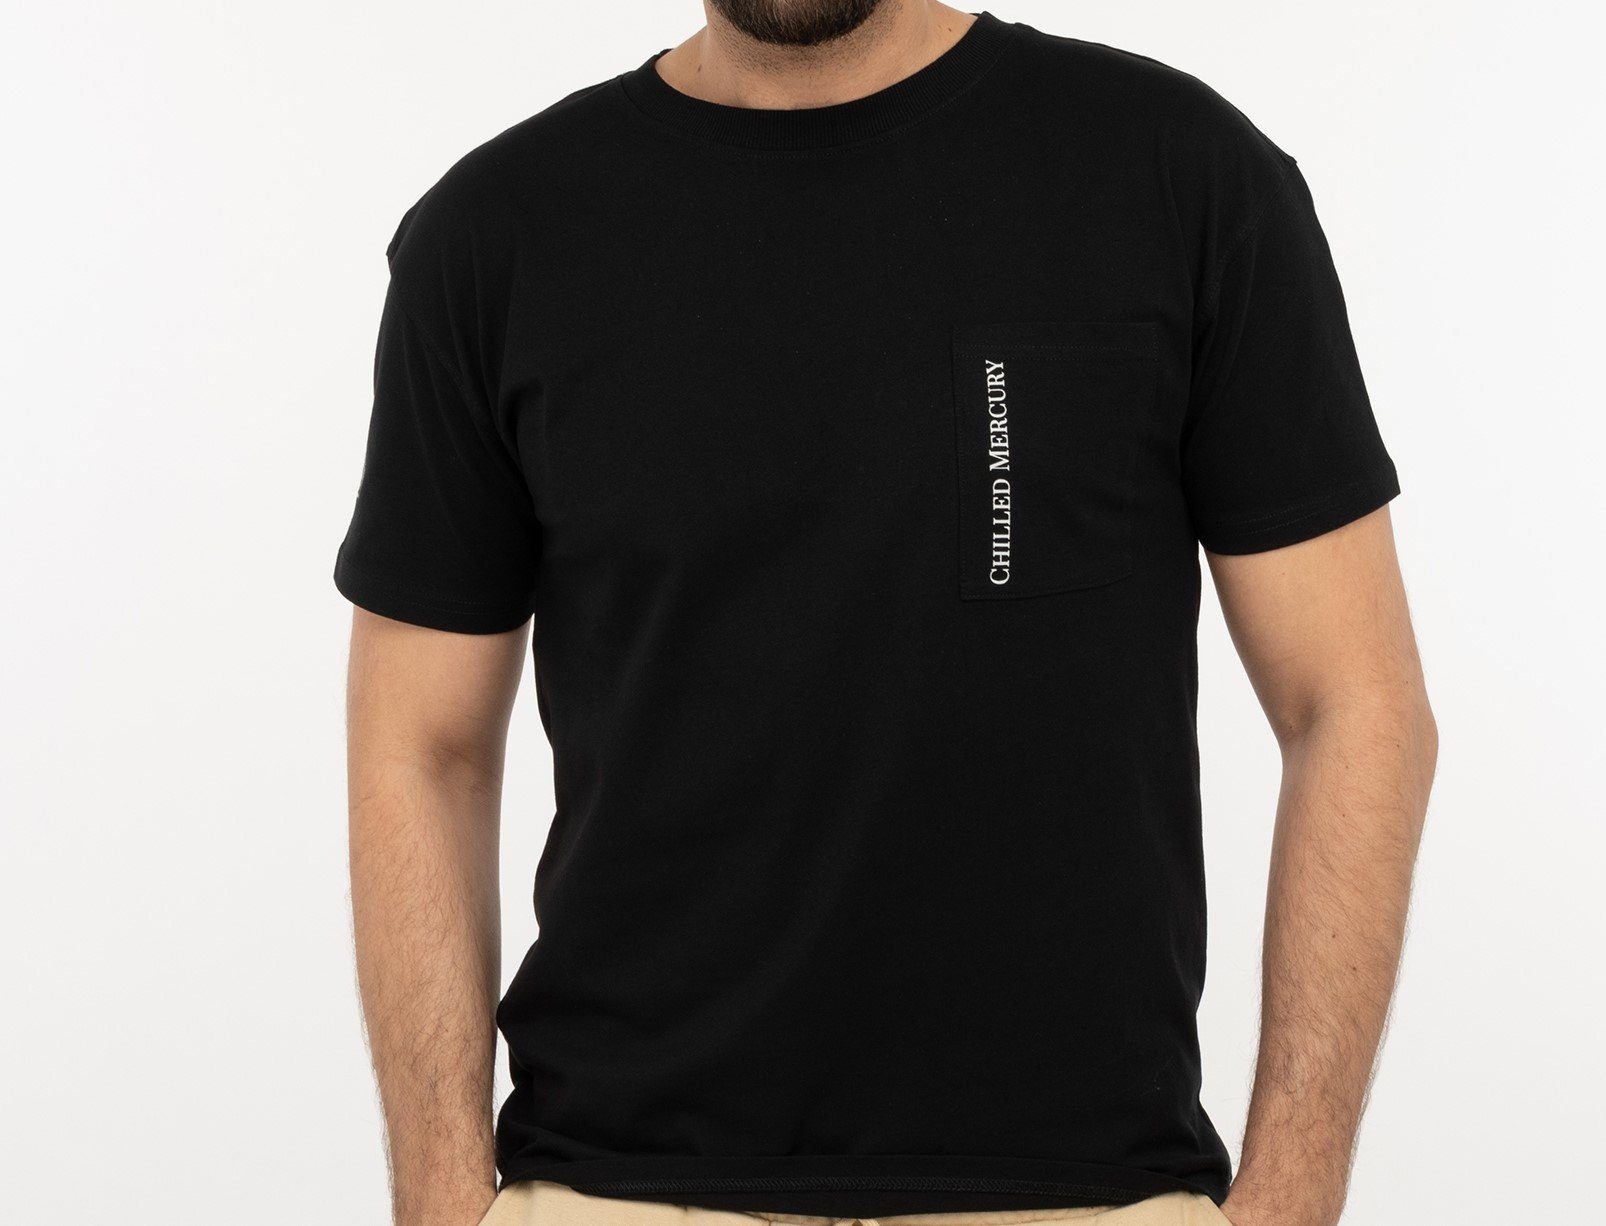 Chilled Mercury T-Shirt Baumwolle Freizeit Rundhals Shirt/ mit Brusttasche Schwarz | T-Shirts